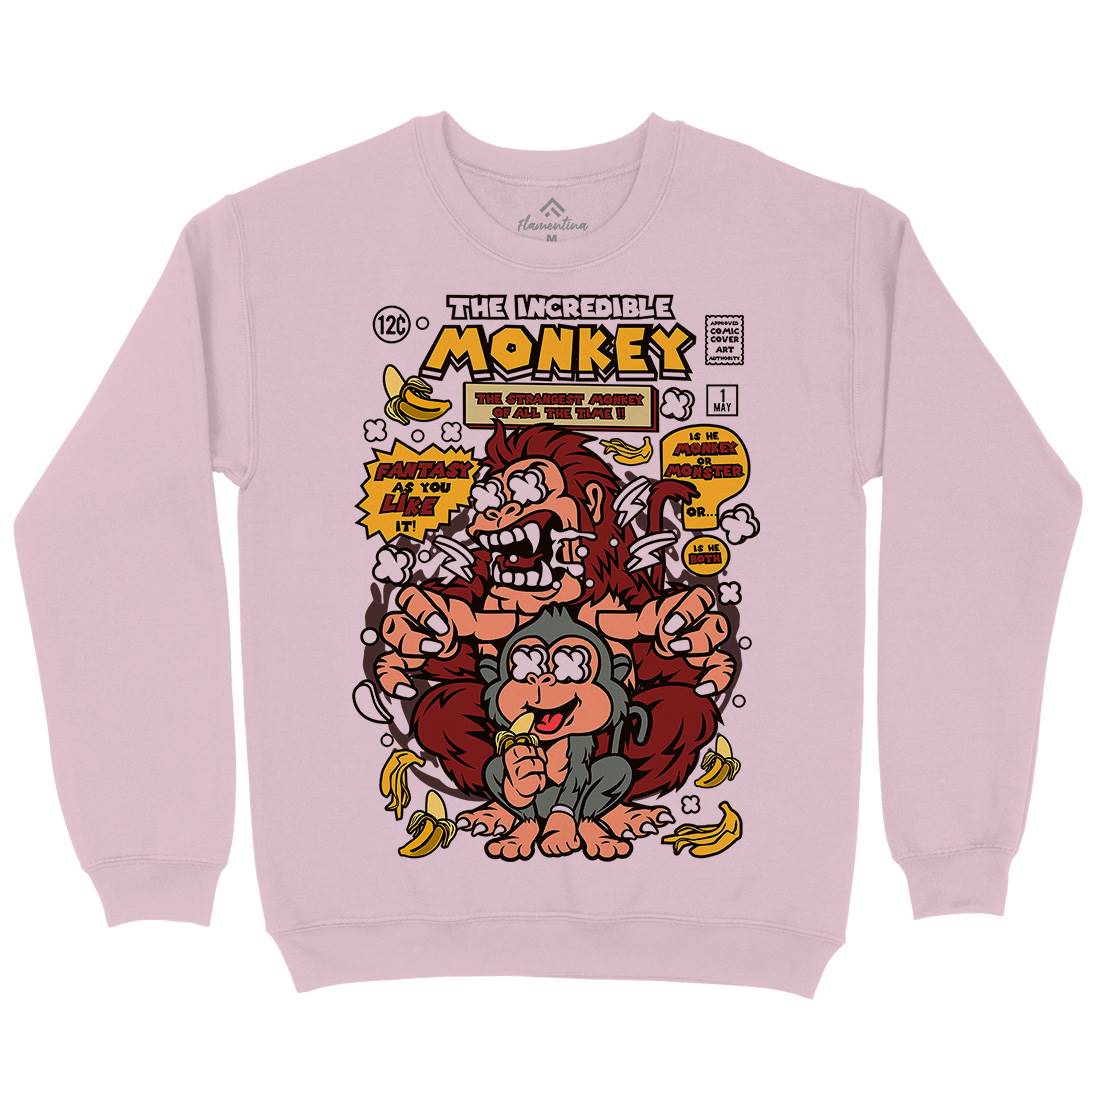 Incredible Monkey Kids Crew Neck Sweatshirt Animals C570